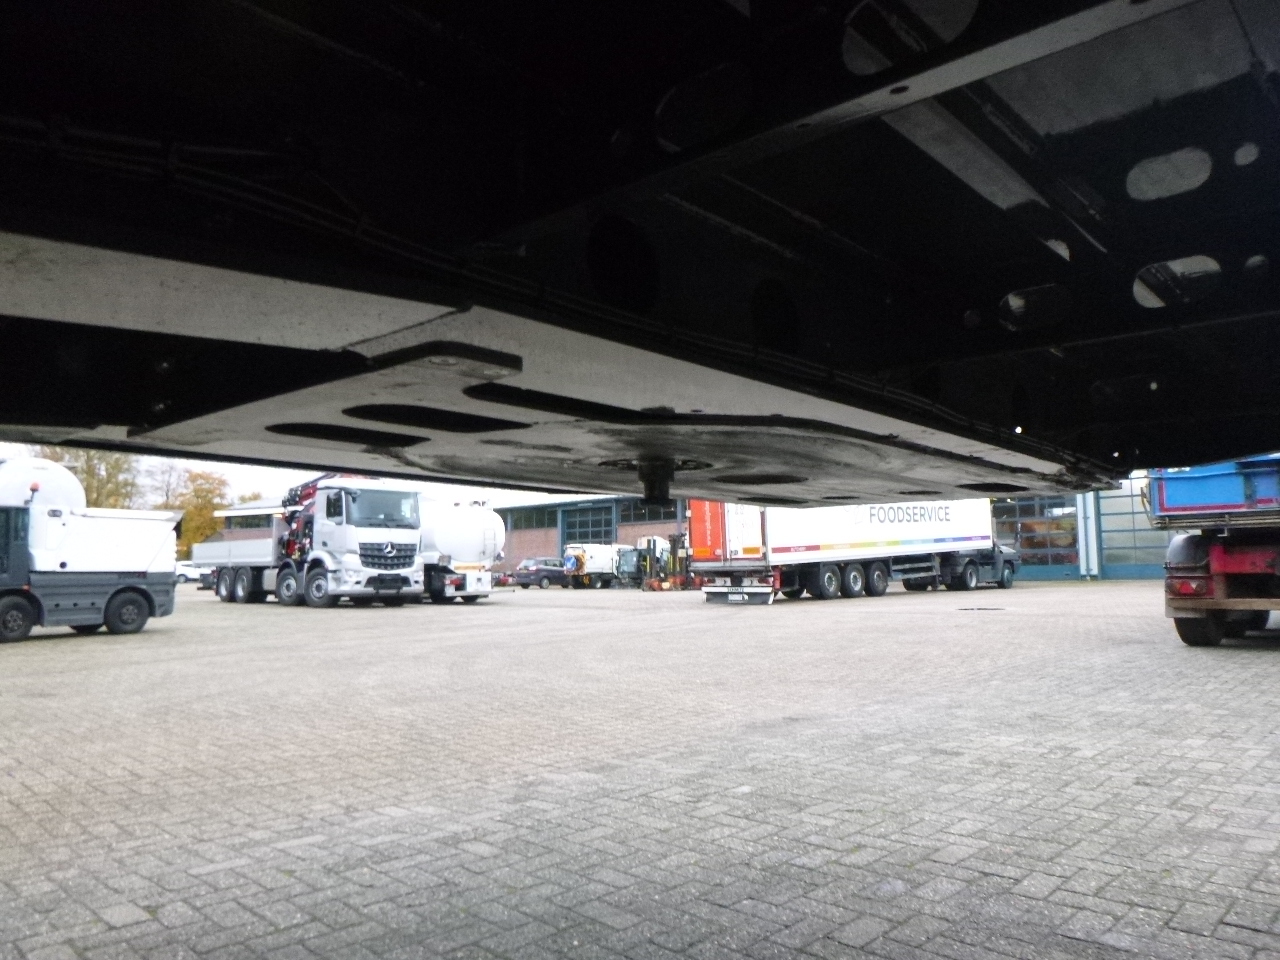 جديد عربة مسطحة منخفضة نصف مقطورة Langendorf 3-axle semi-lowbed trailer 48T ext. 13.5 m + ramps: صور 25